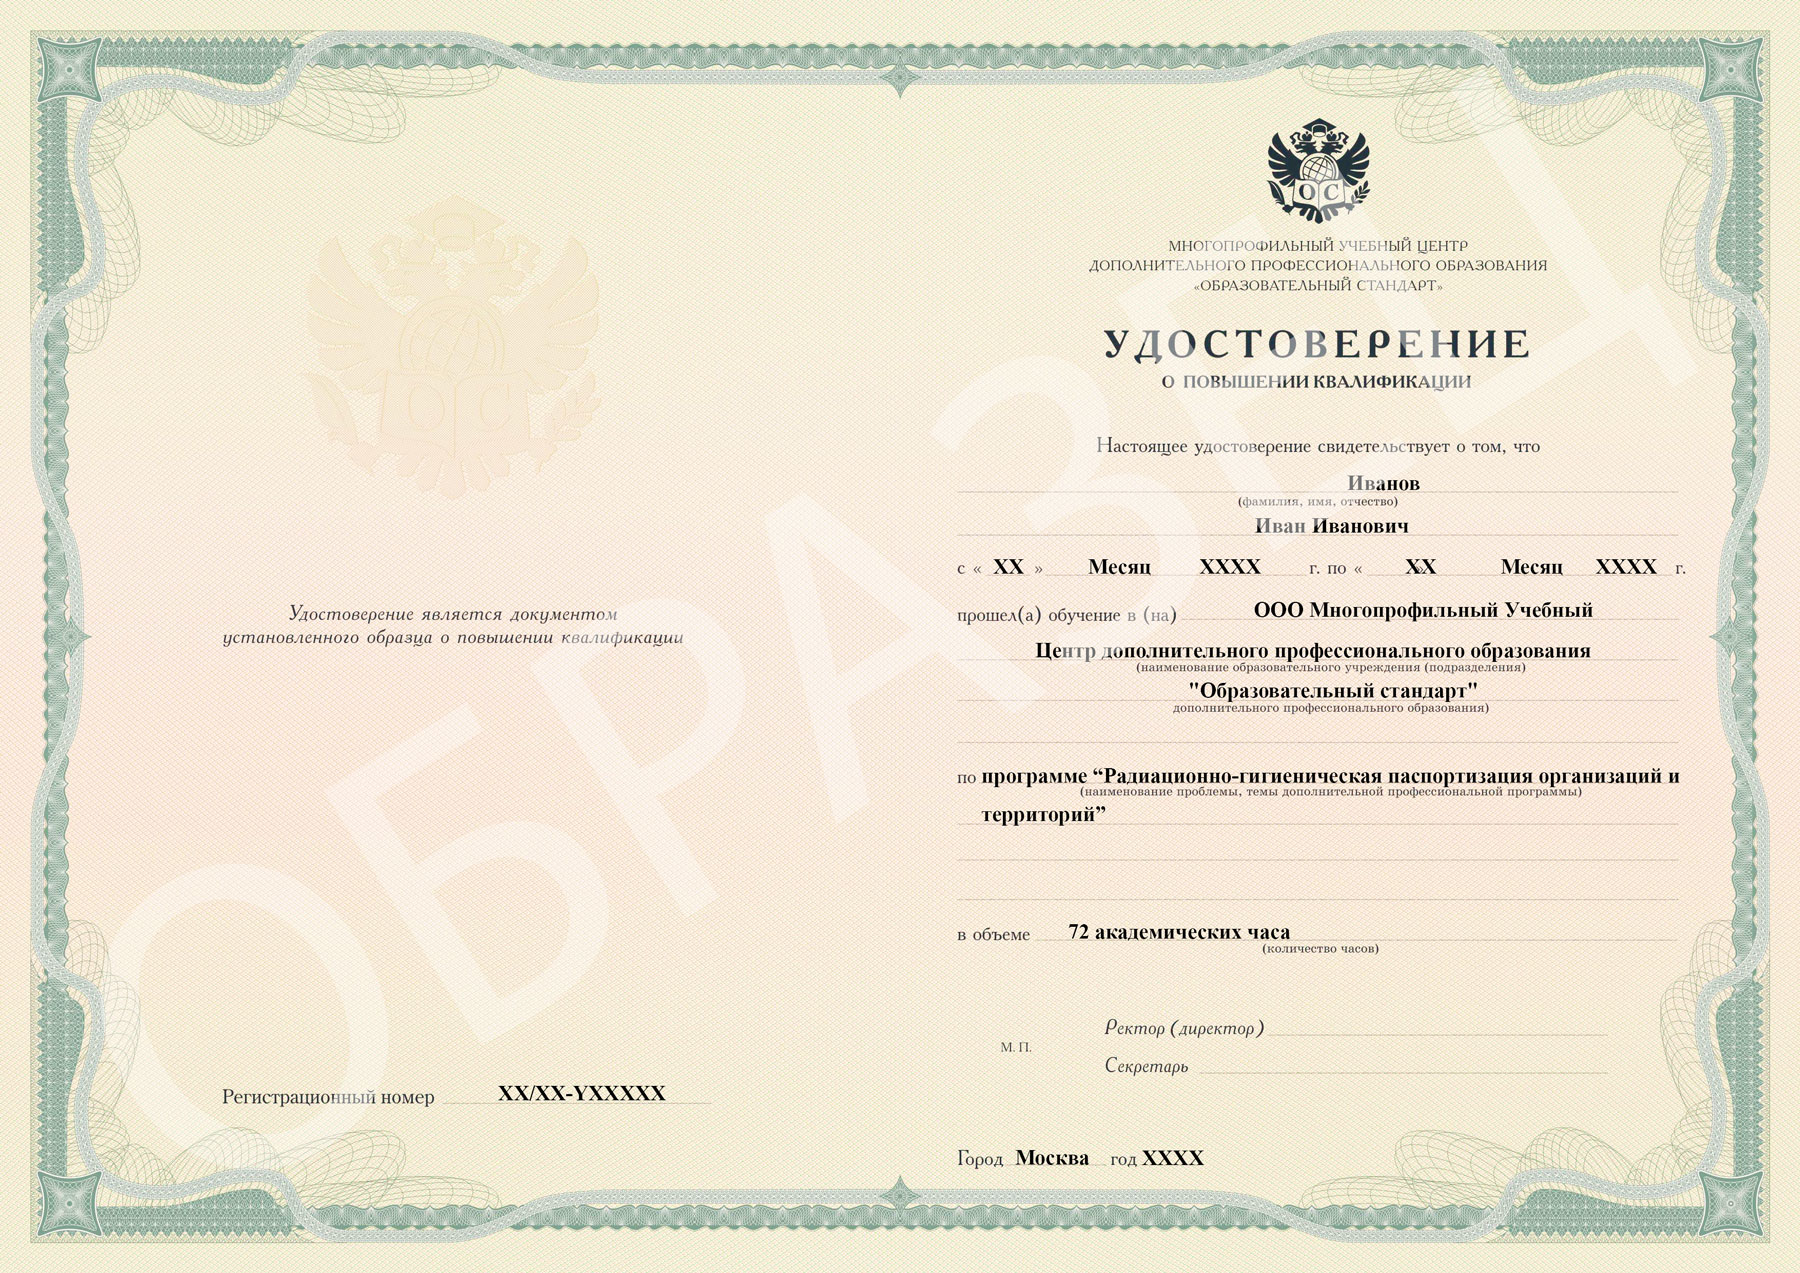 Радиационно-гигиеническая паспортизация организаций и территорий образец удостоверения